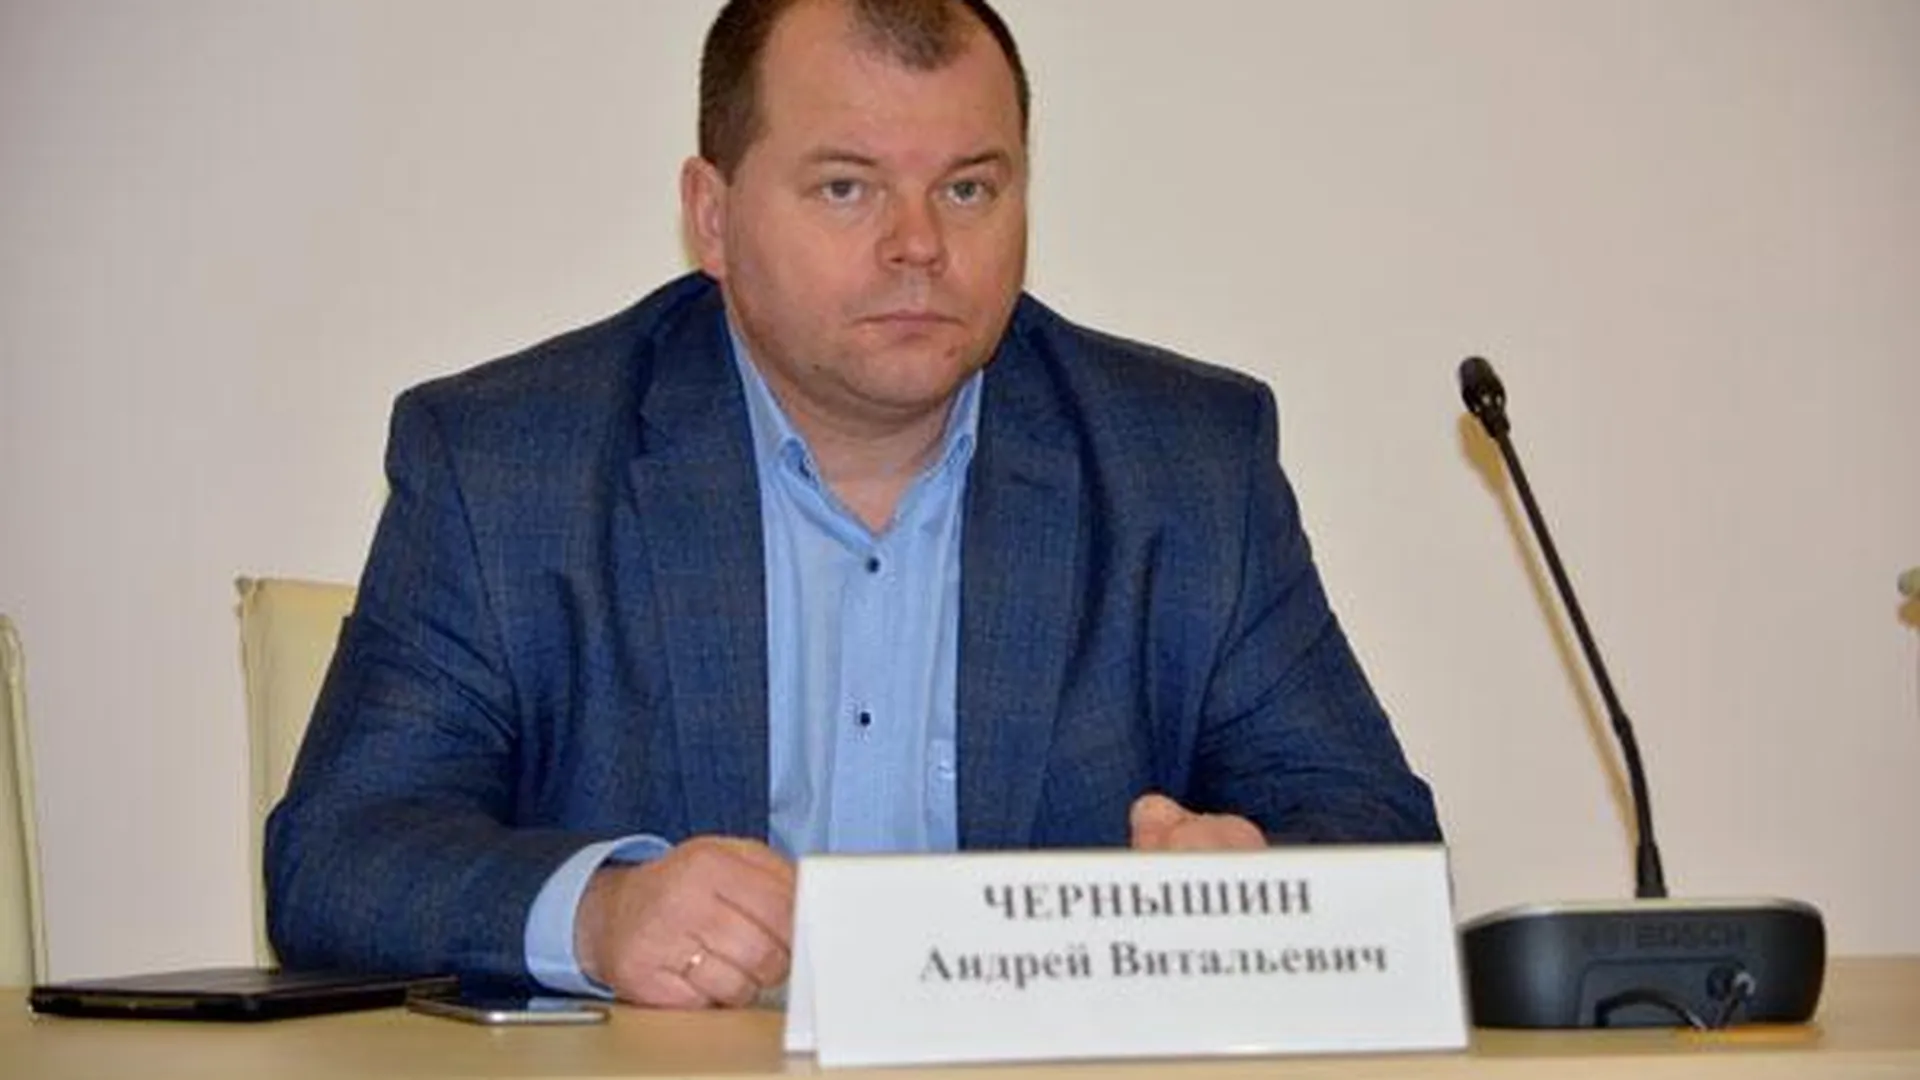 Чернышин: злостных неплательщиков ожидает суд